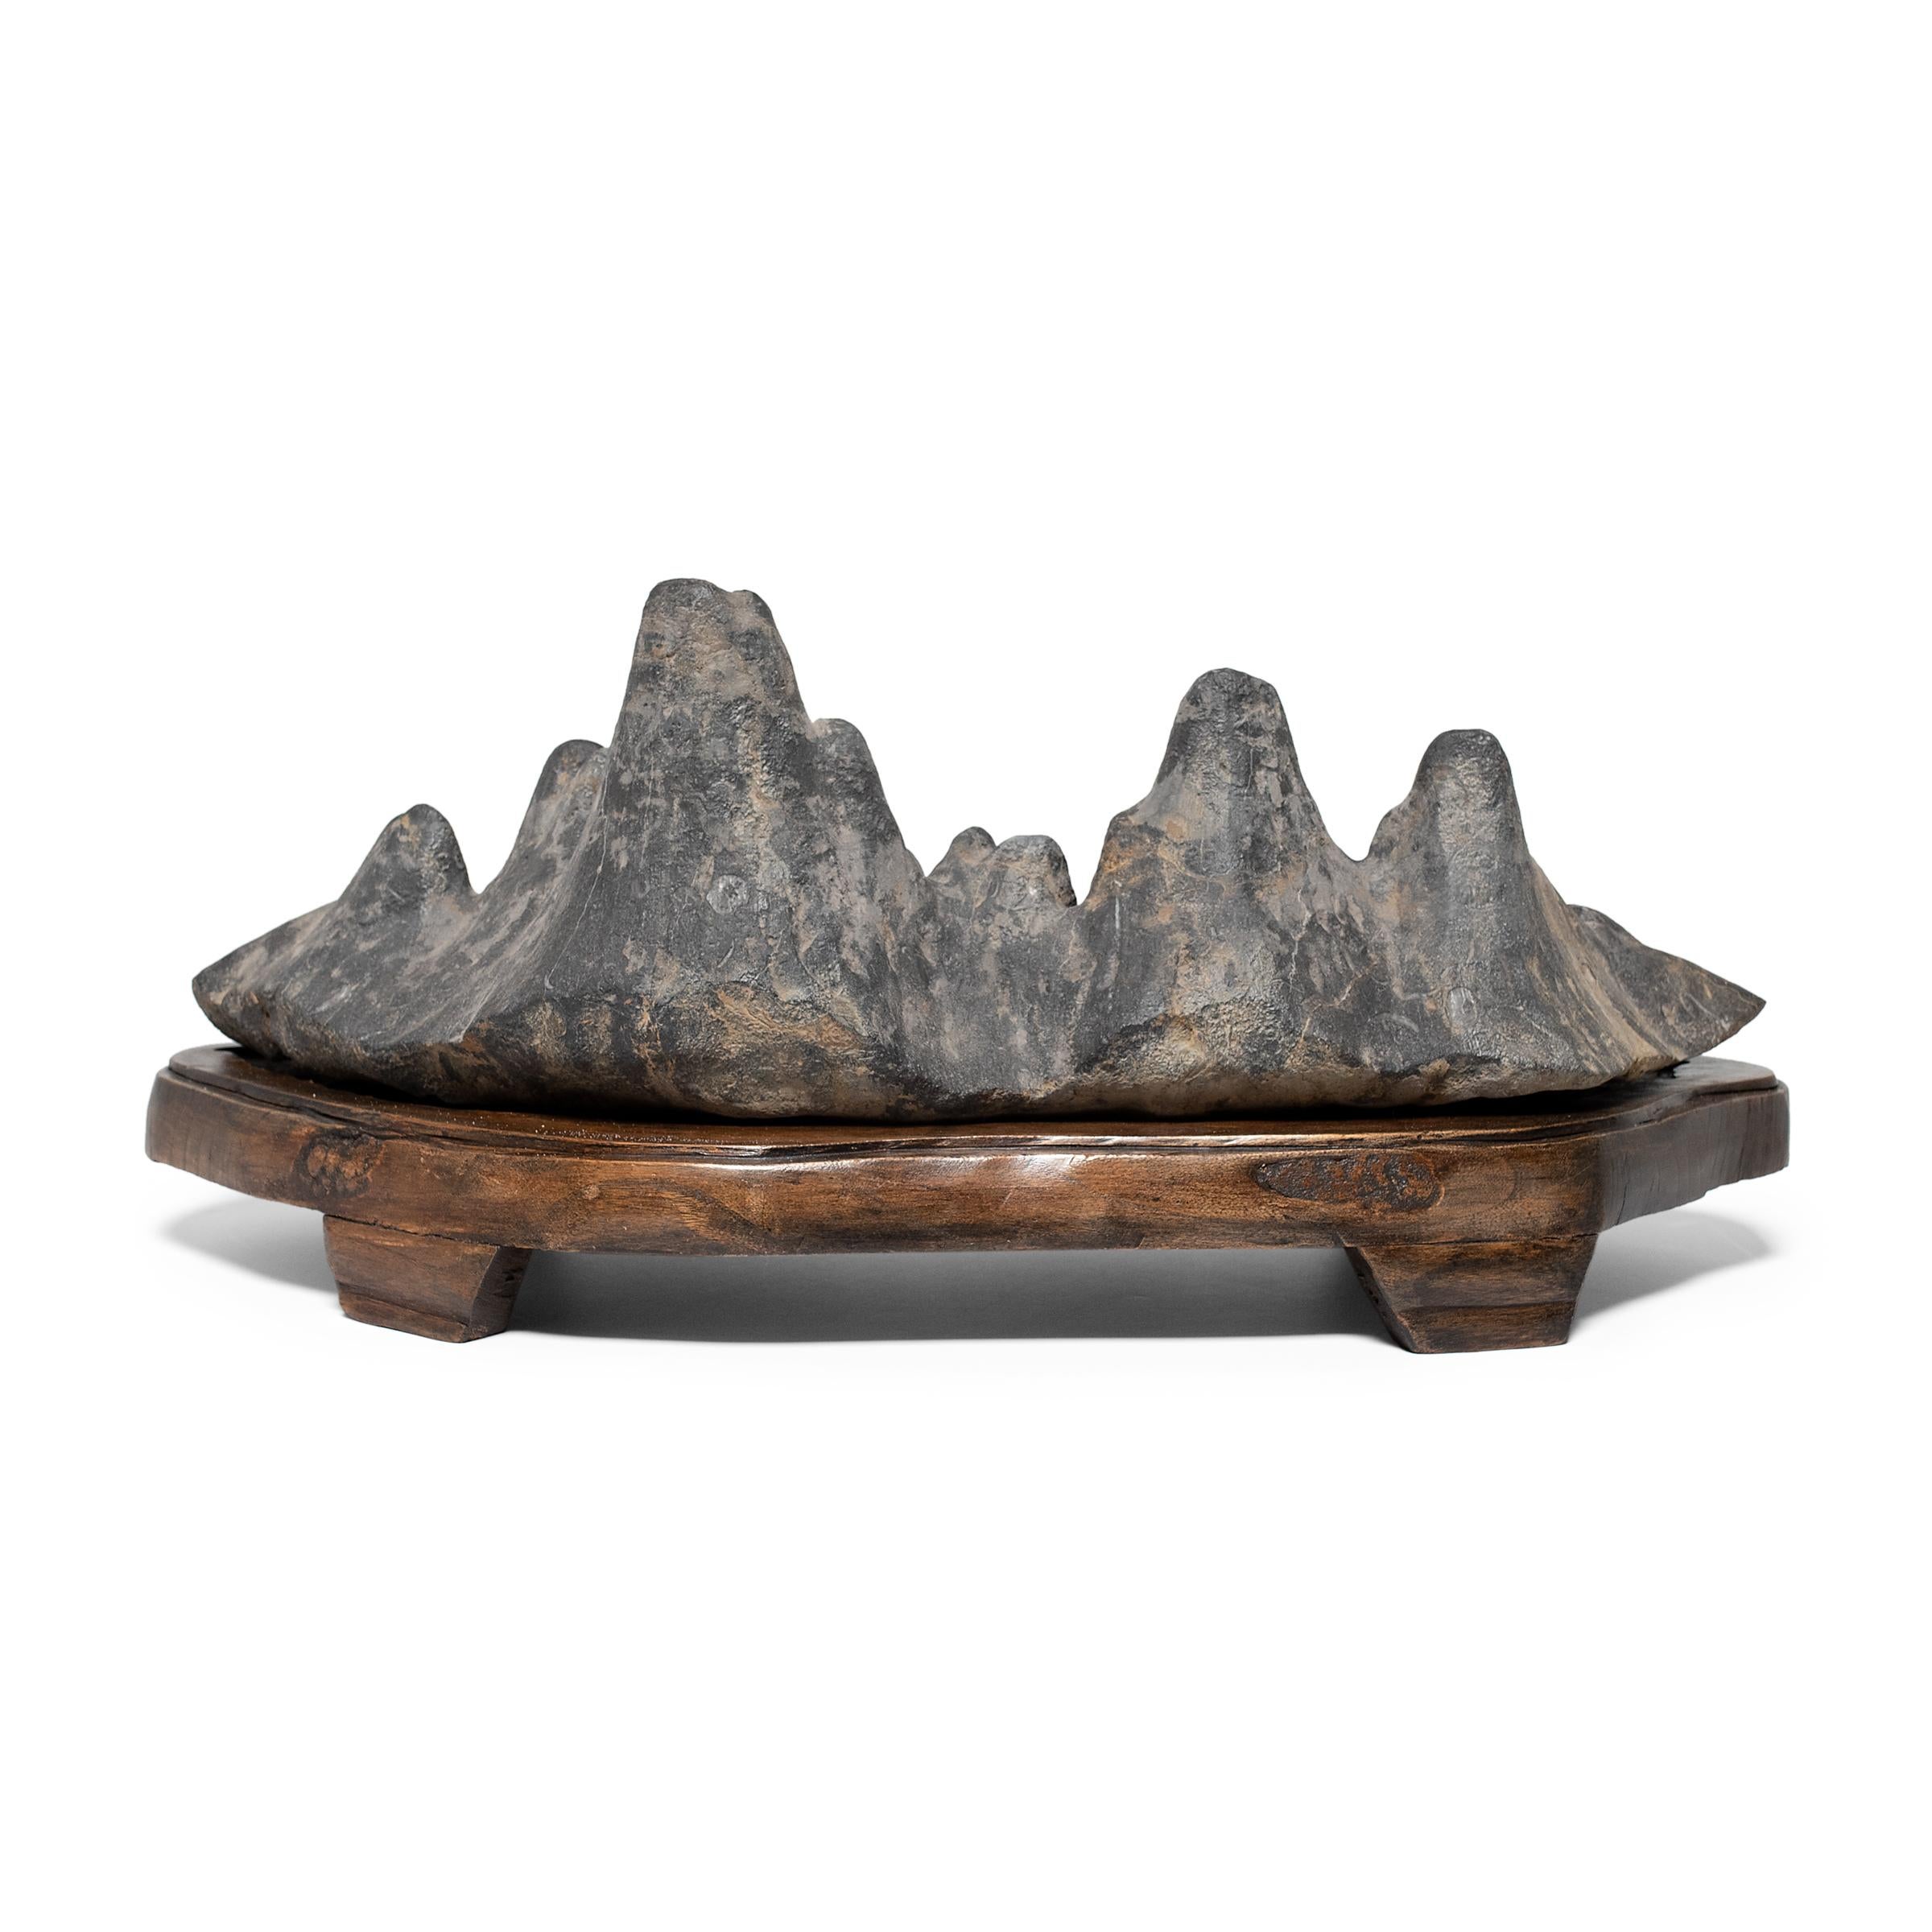 Chinese Mountain Range Scholars' Rock